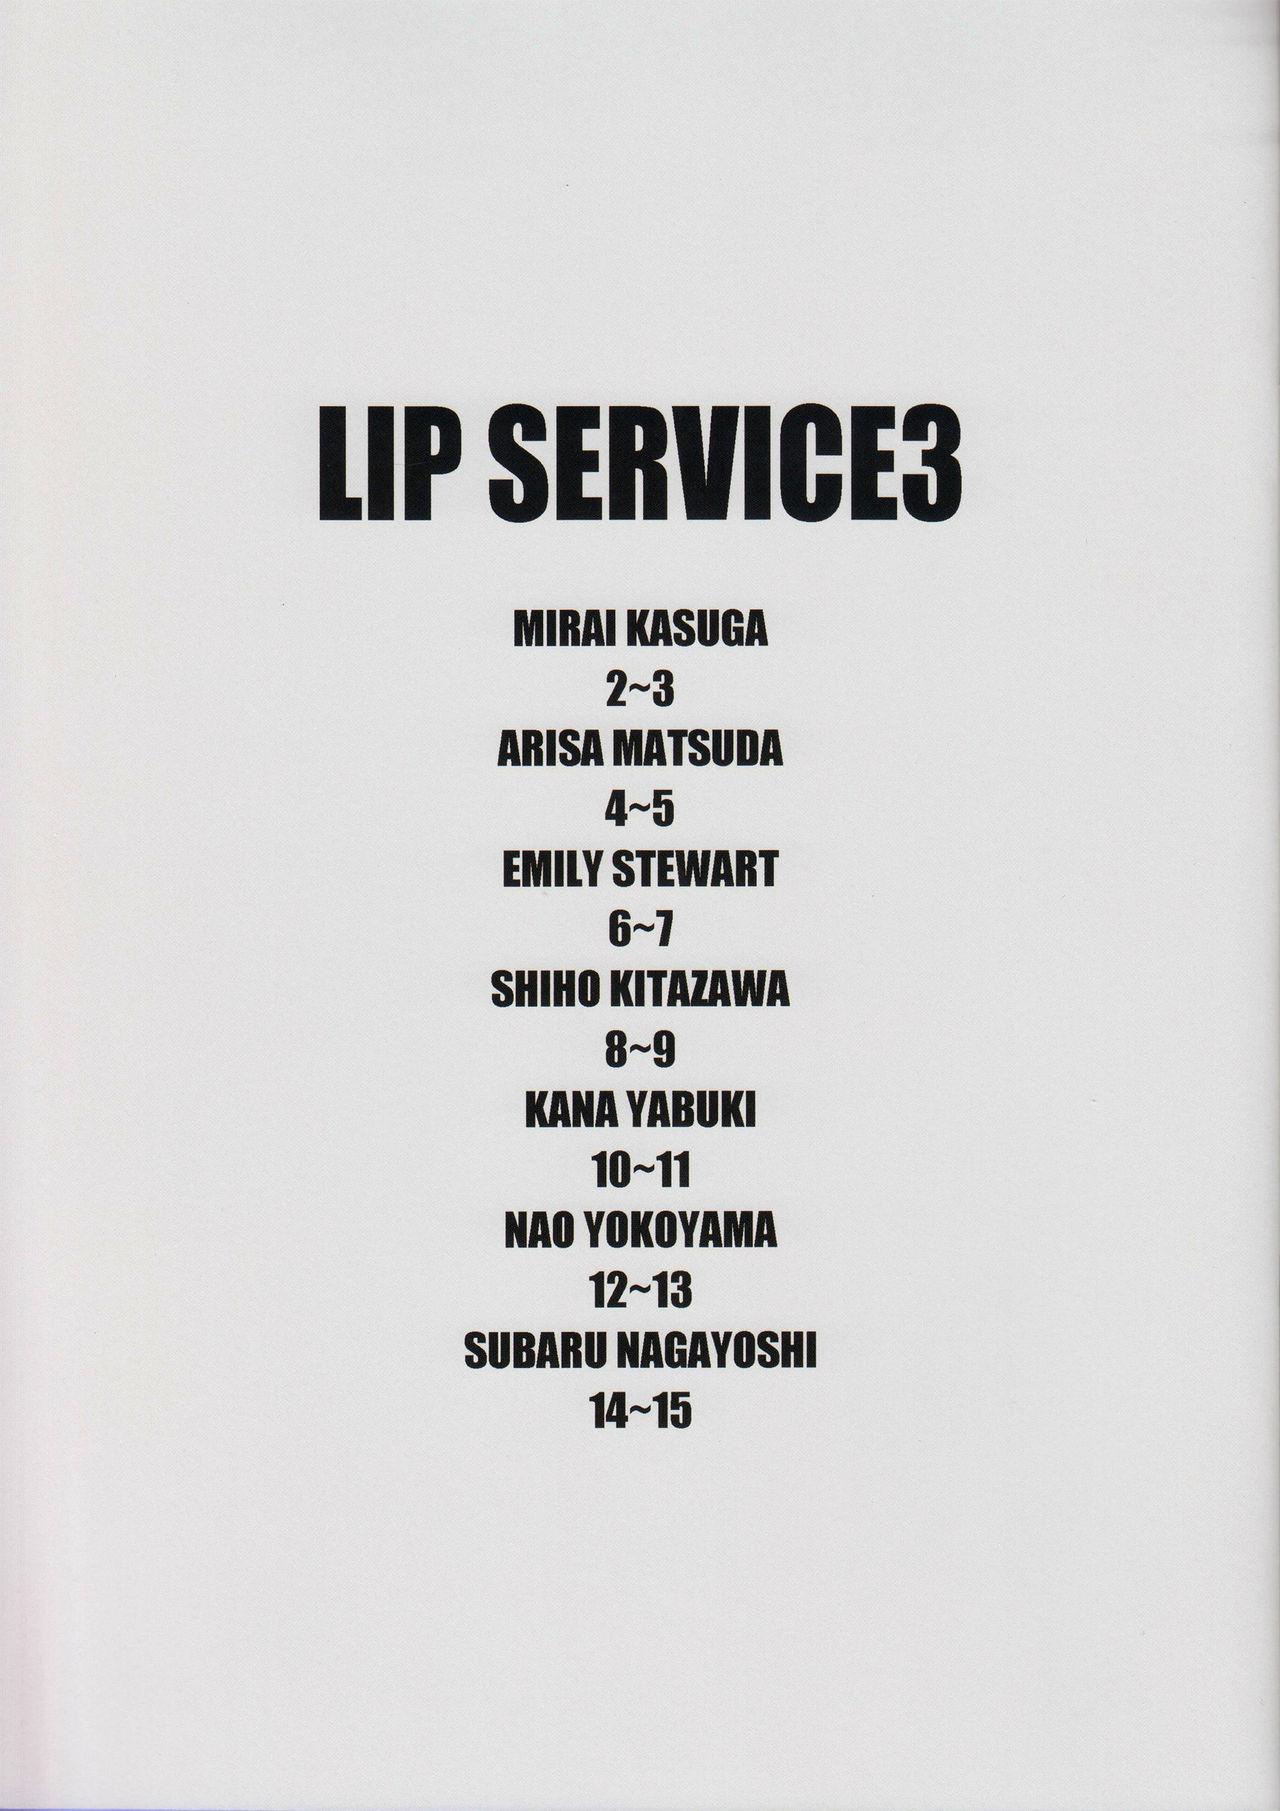 LIP SERVICE3 1